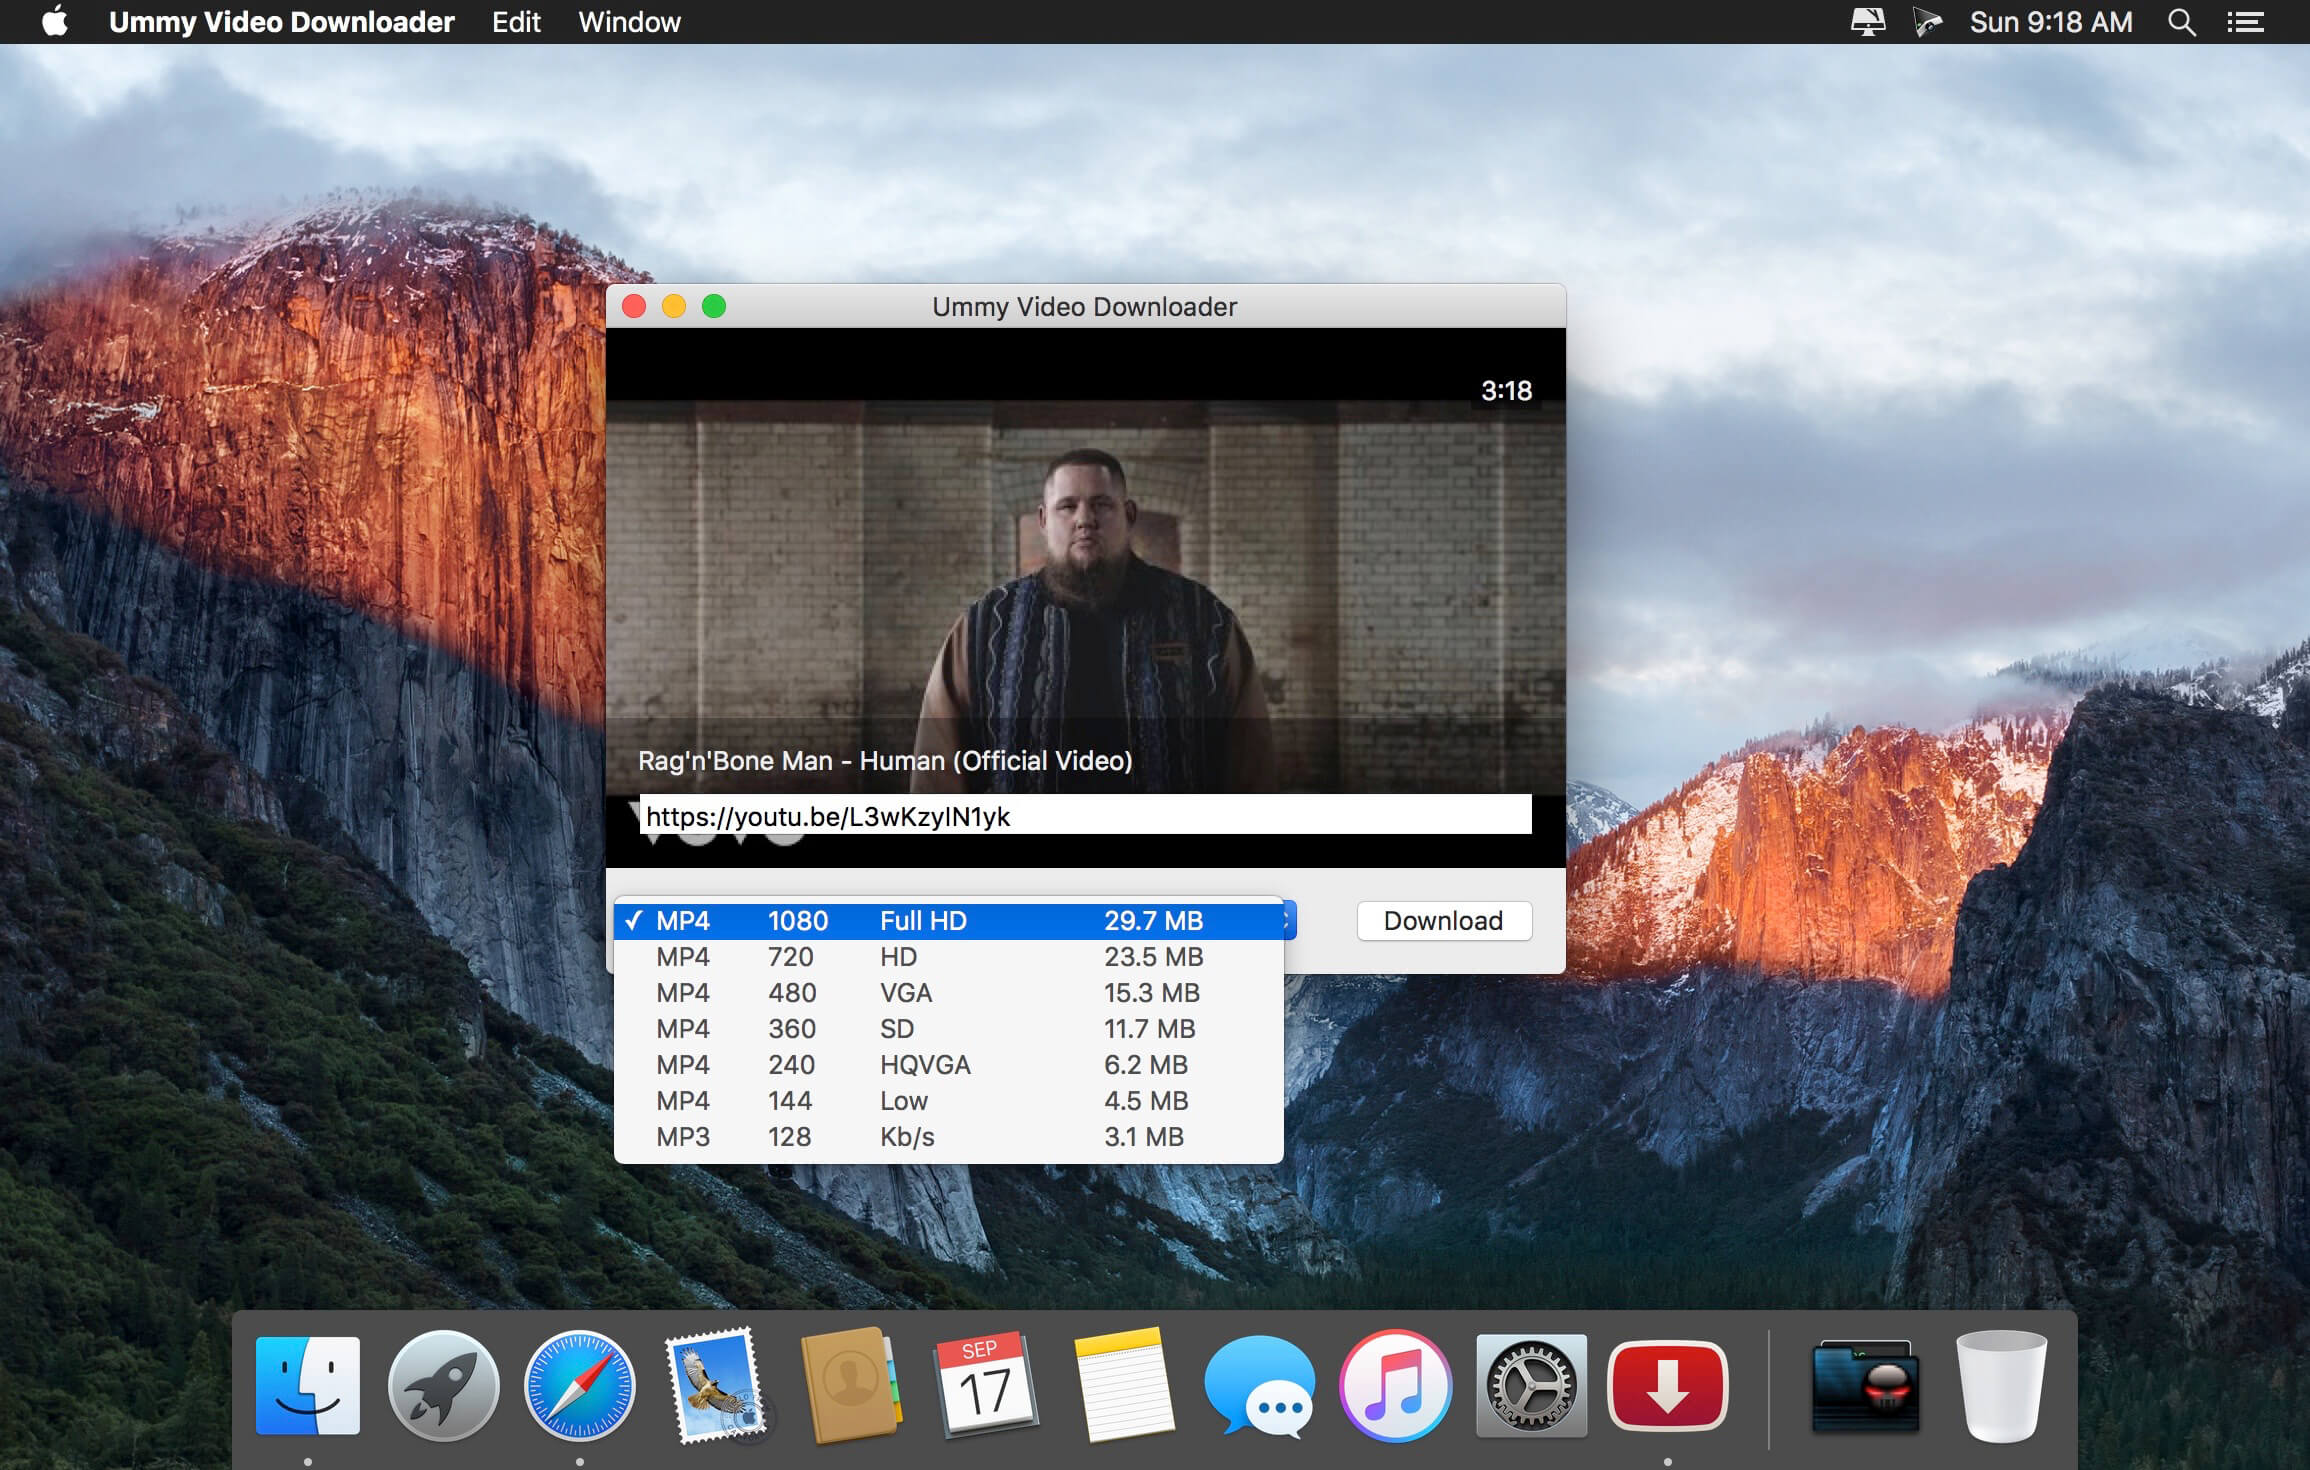 ummy video downloader free download for mac